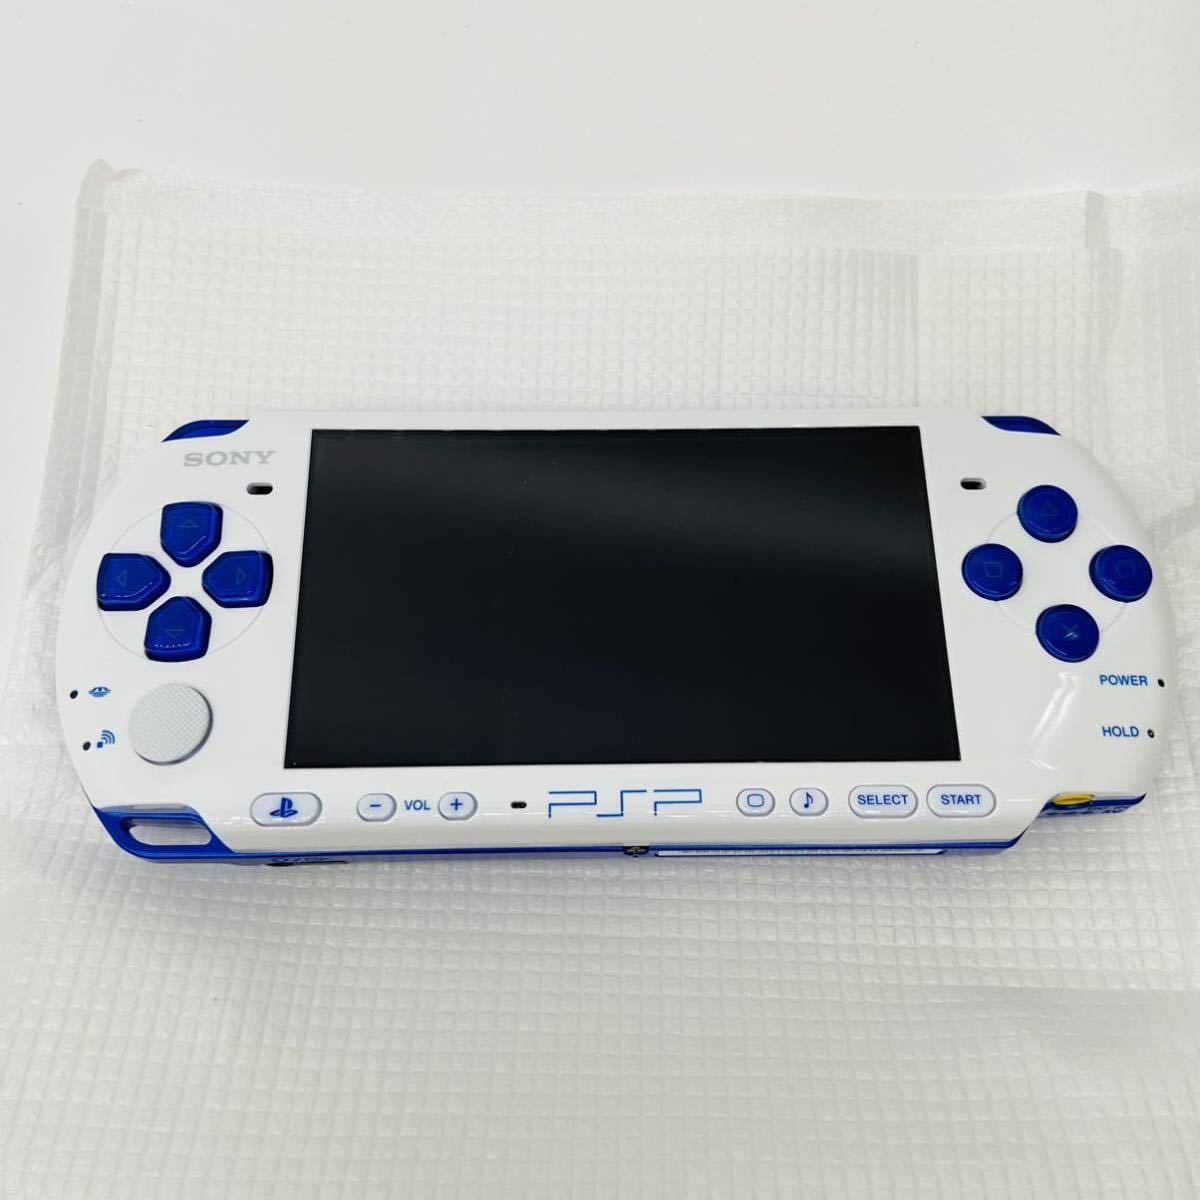 送料無料 新品 未使用 SONY PlayStation Portable プレイステーション ポータブル 新米ハンターズパック ホワイト ブルー PSP3000 ソニー_画像2